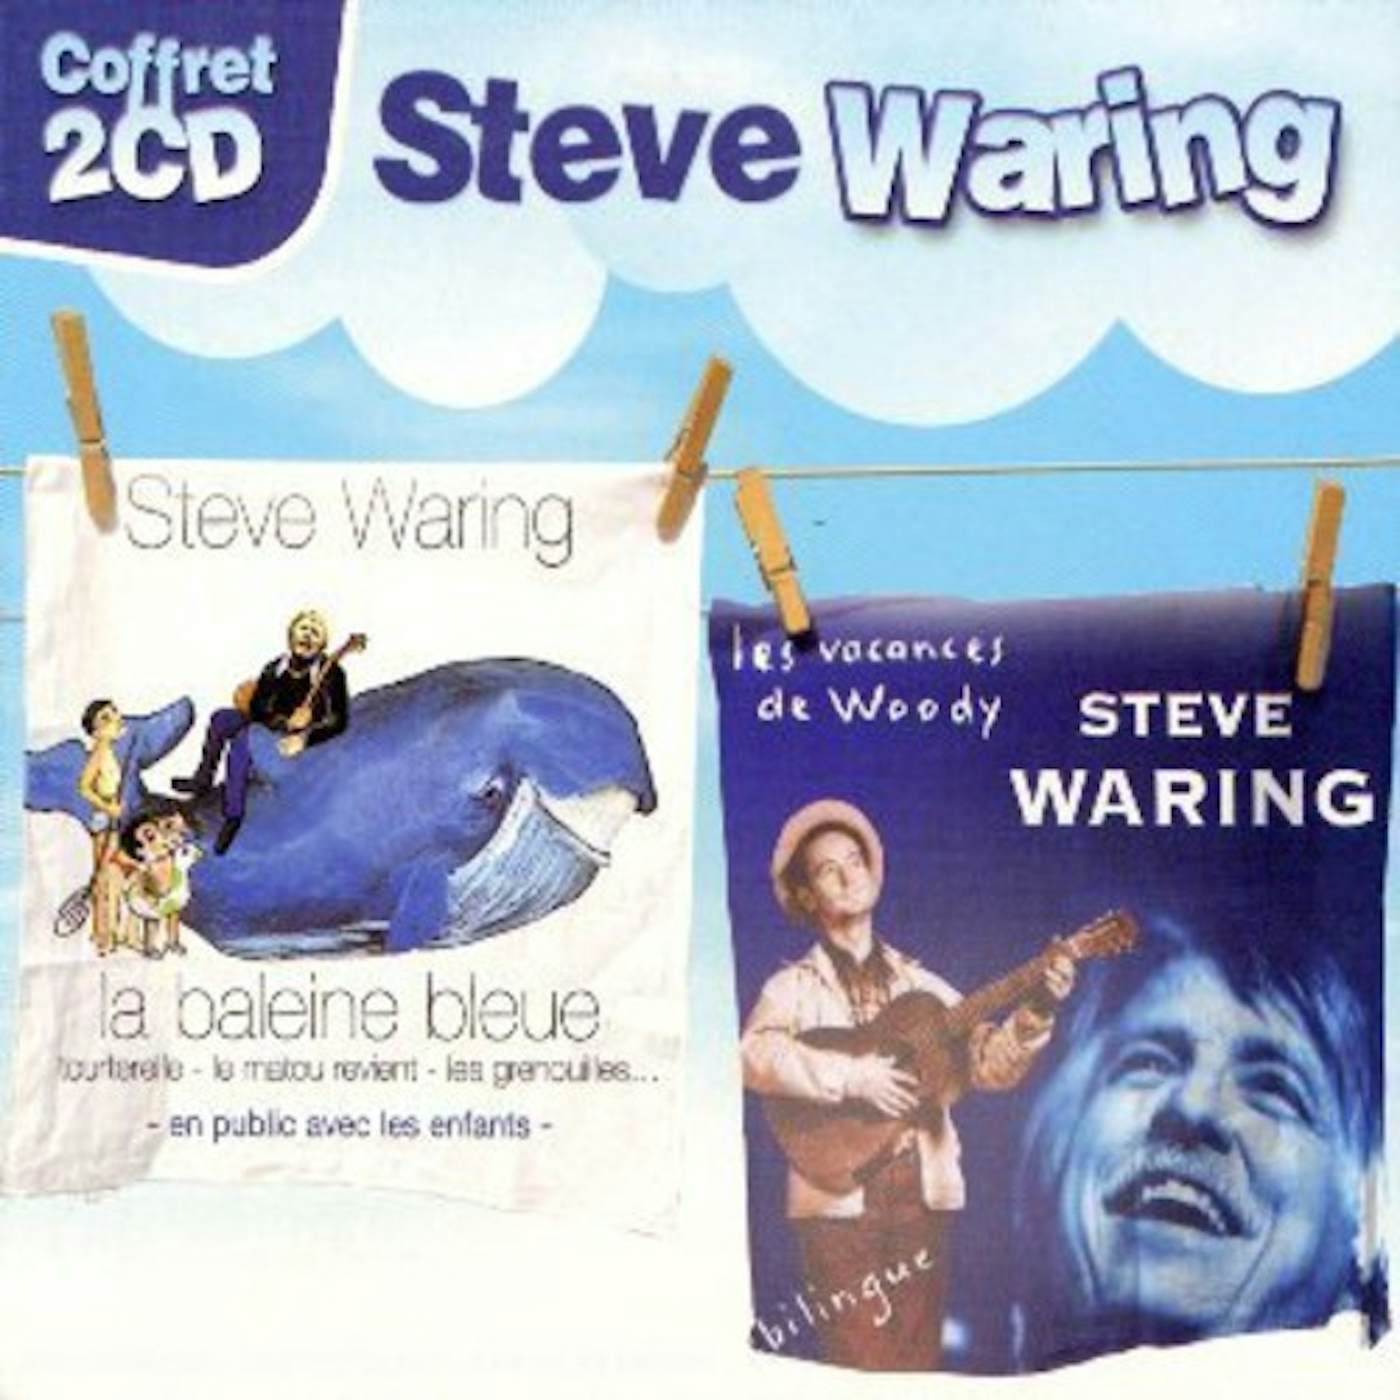 Steve Waring - Les grenouilles - chanson pour enfants 